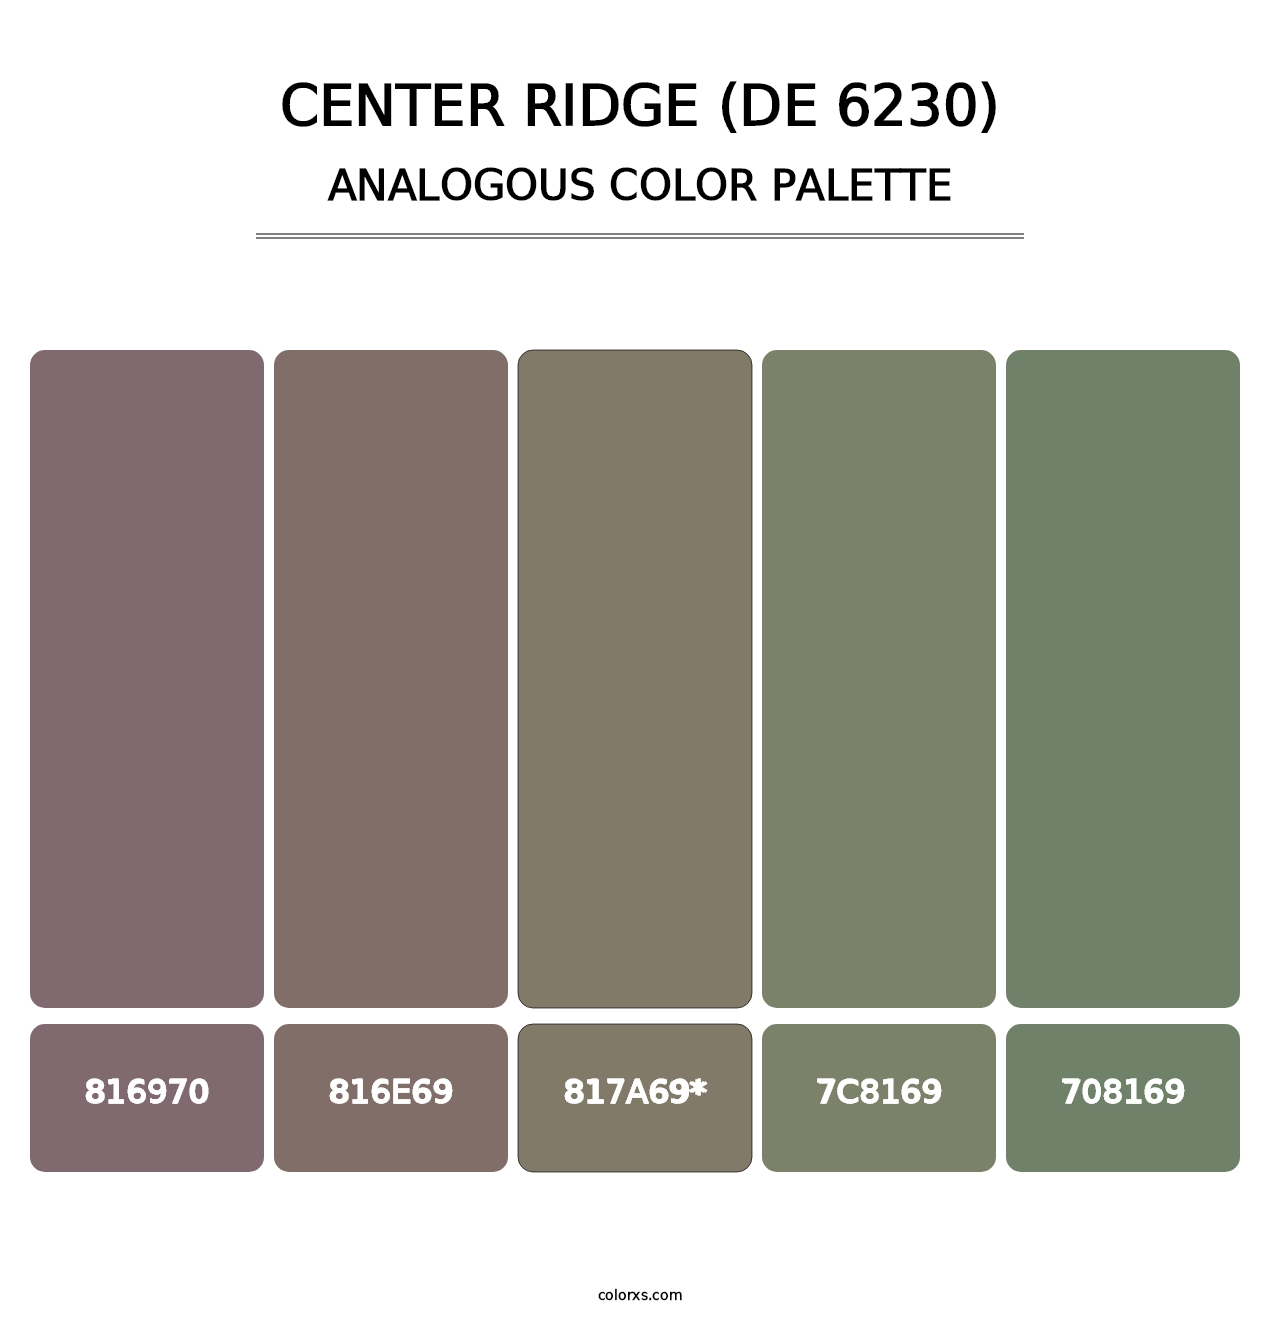 Center Ridge (DE 6230) - Analogous Color Palette